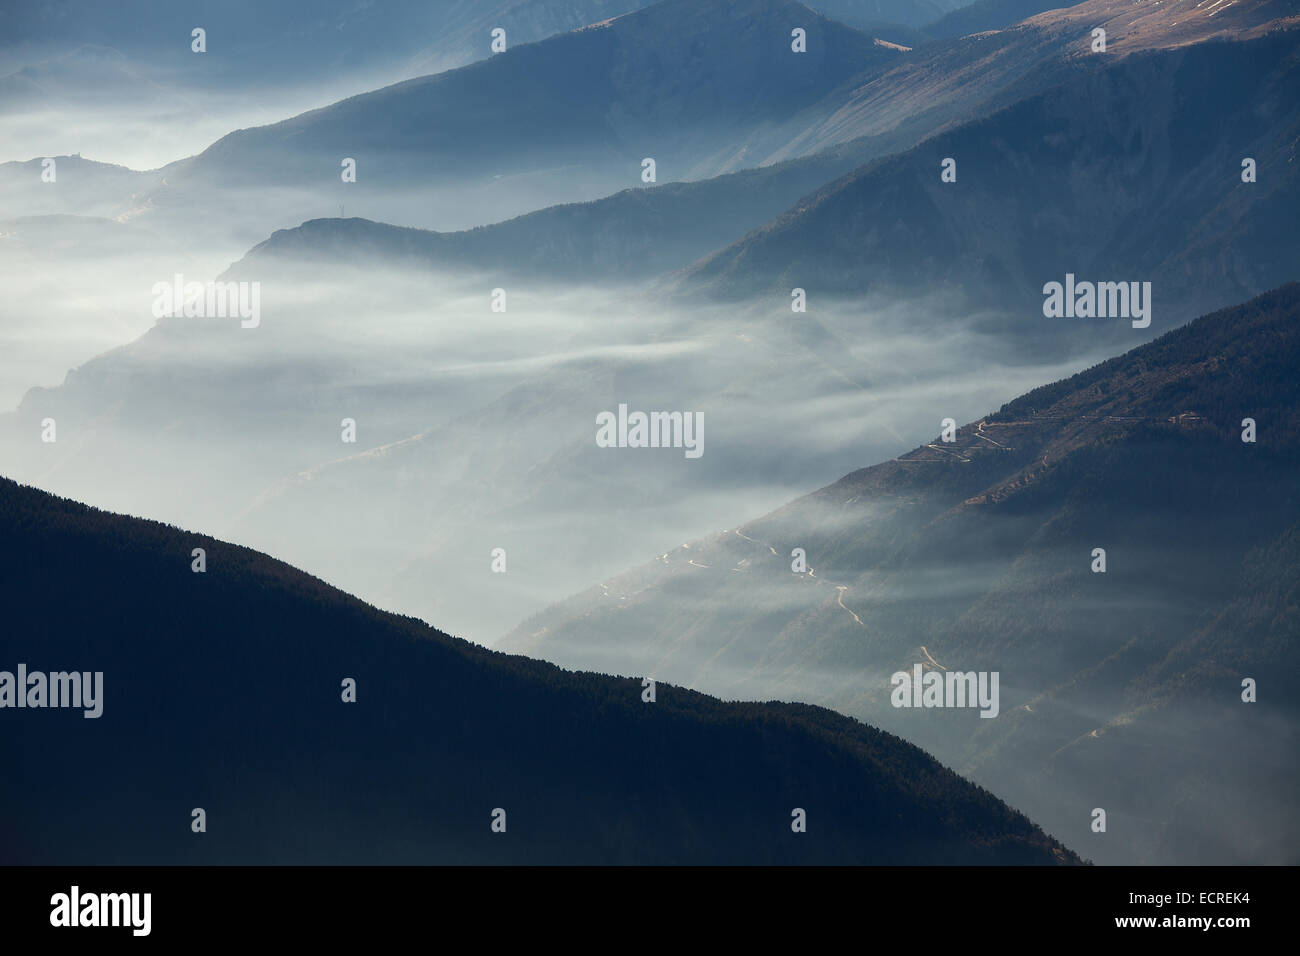 Mountain mist Stock Photo